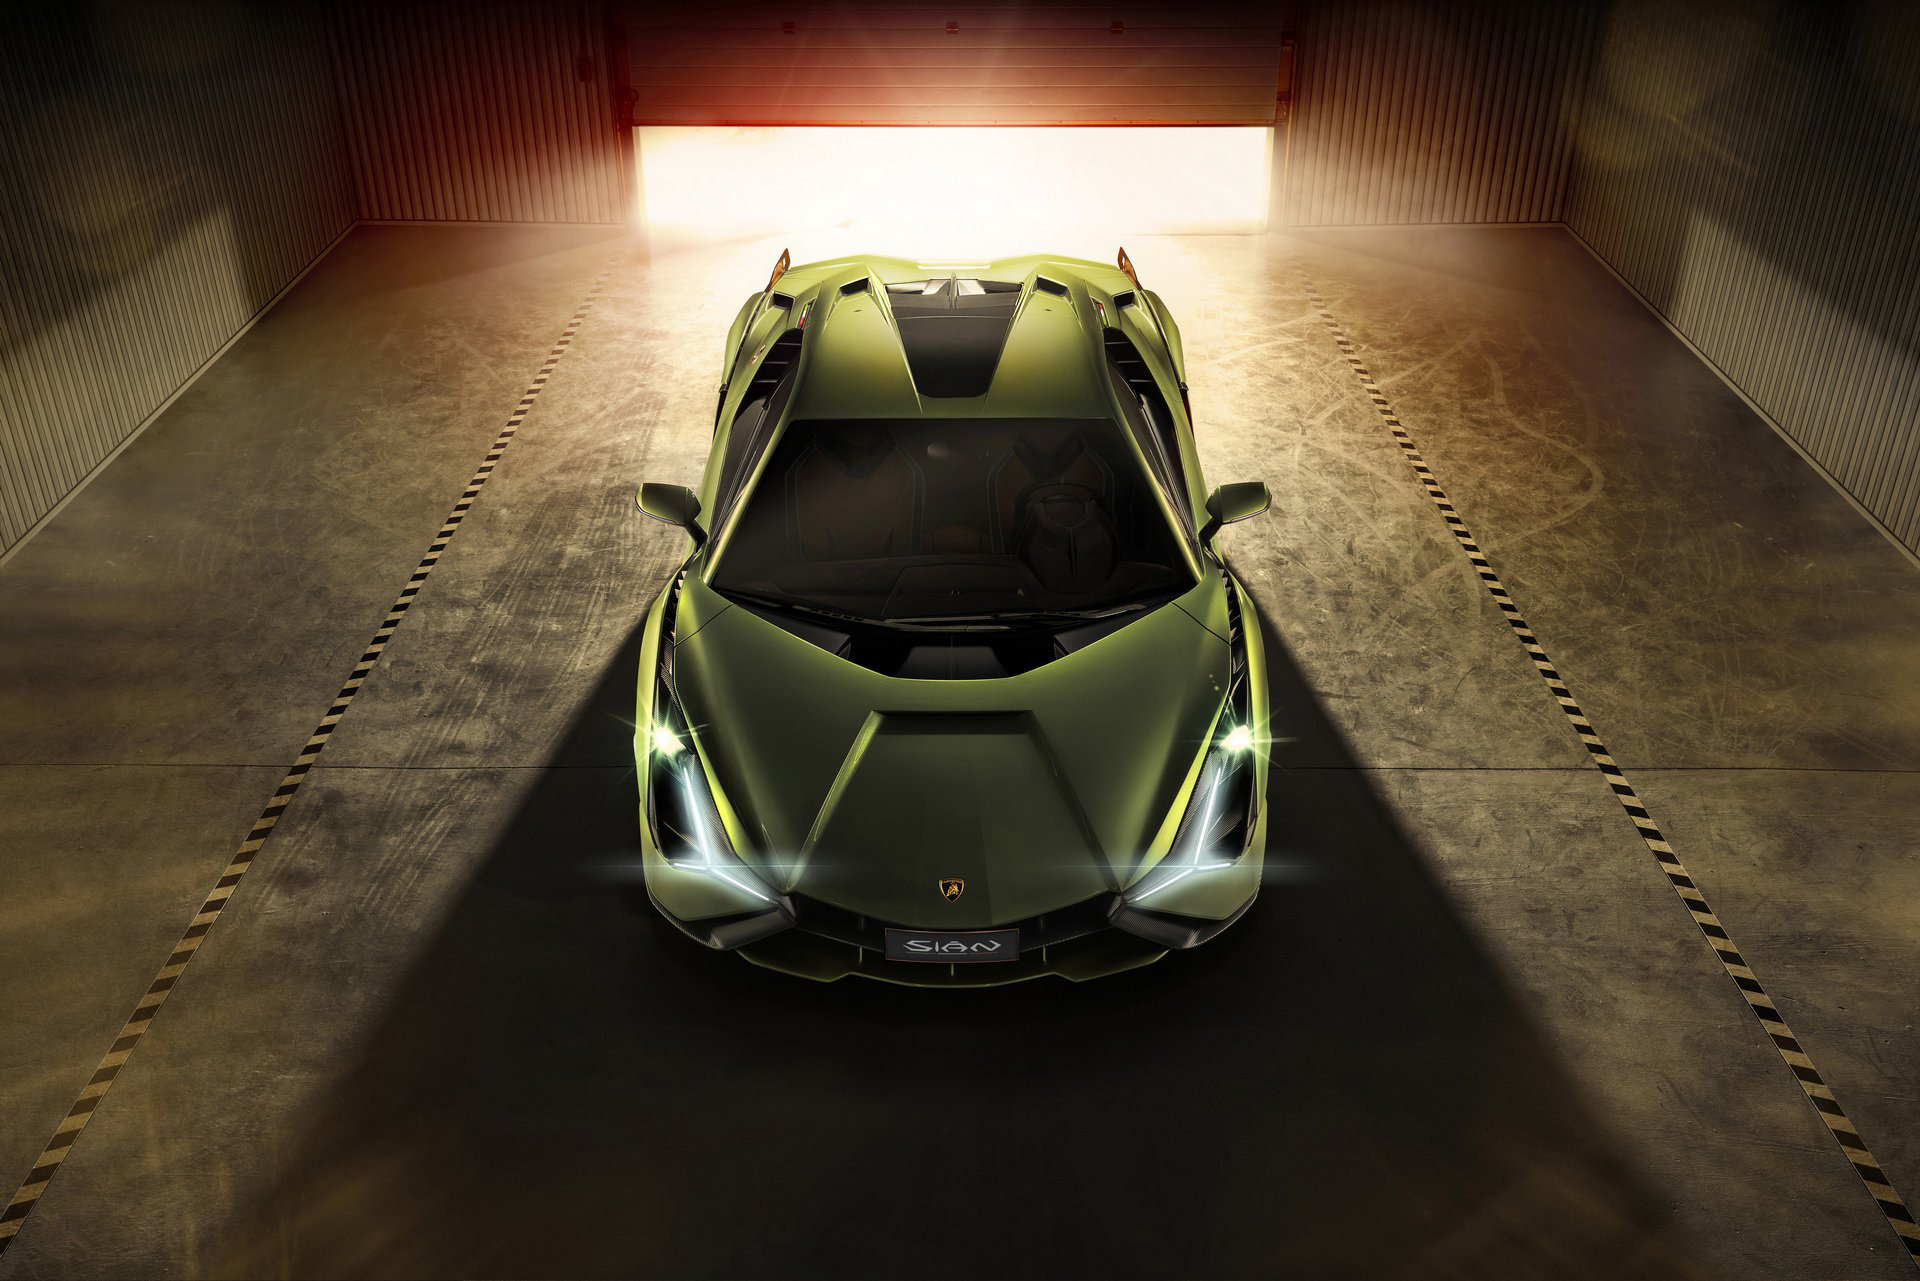 Ra mắt siêu phẩm Lamborghini Sián mạnh 808 mã lực, tốc độ tối đa 350 km/h